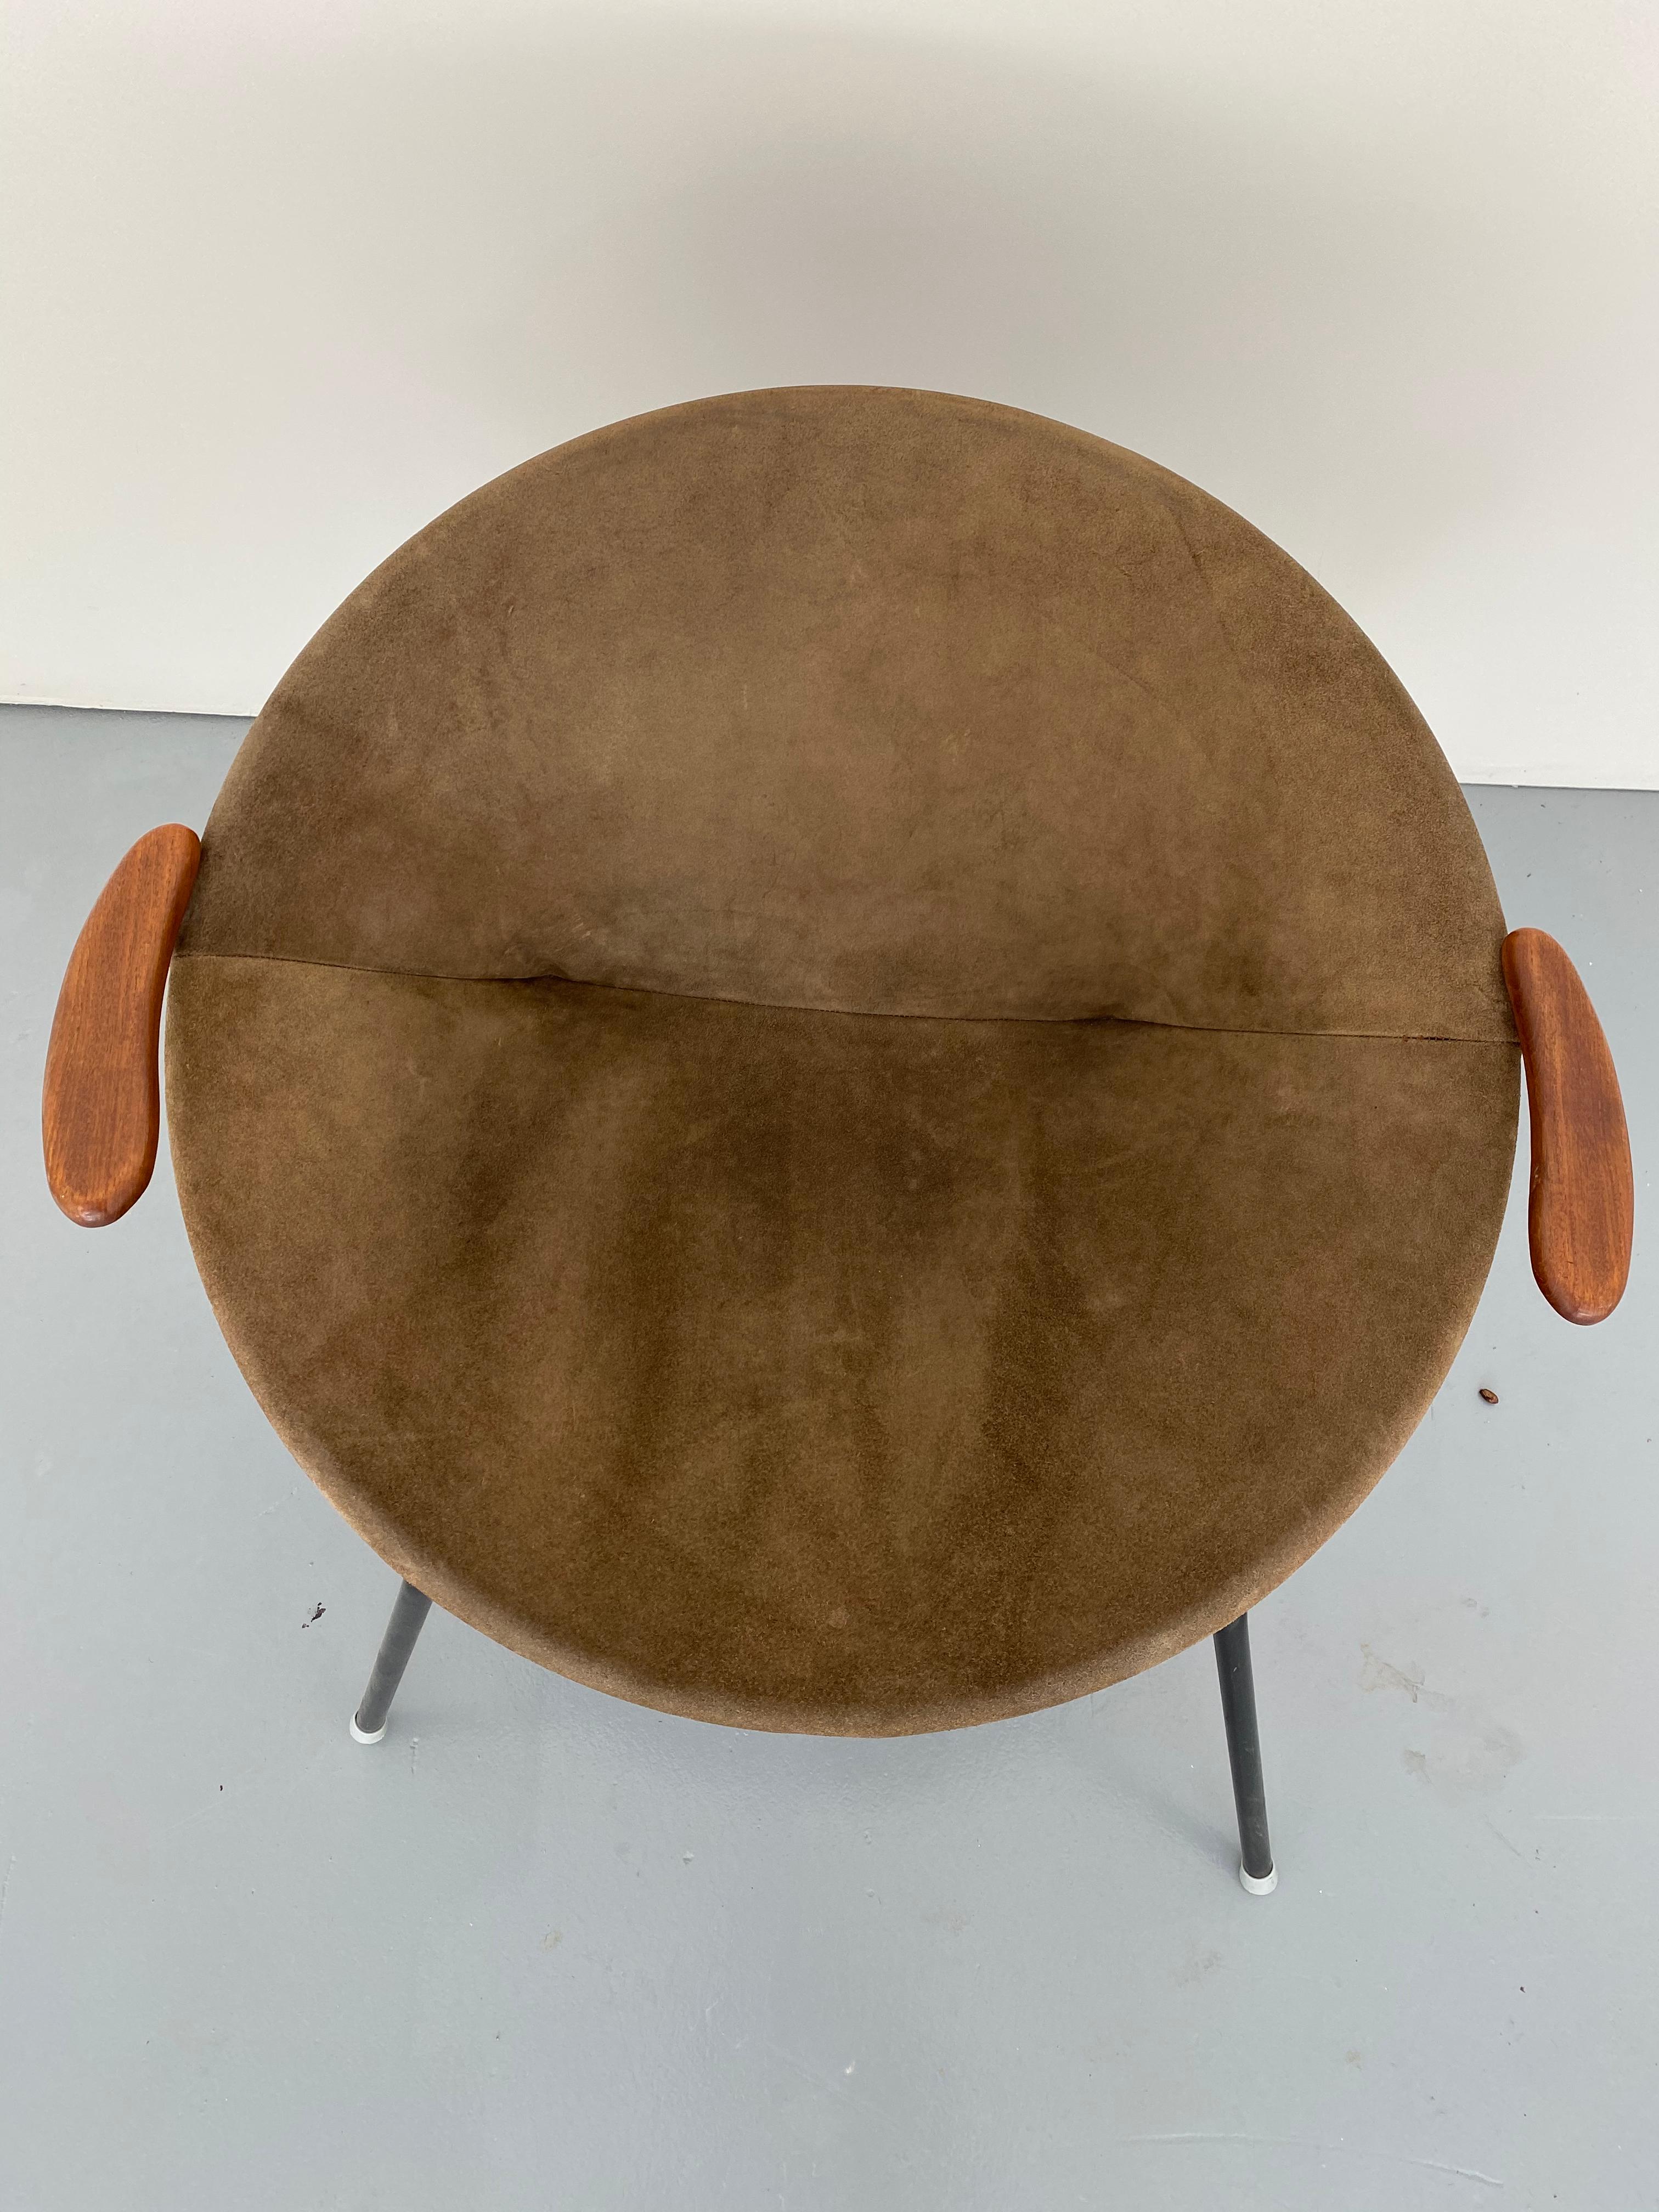 1960s Danish leather balloon chair, Hans Olsen midcentury suede sling hoop teak arms
Measures: 30.38